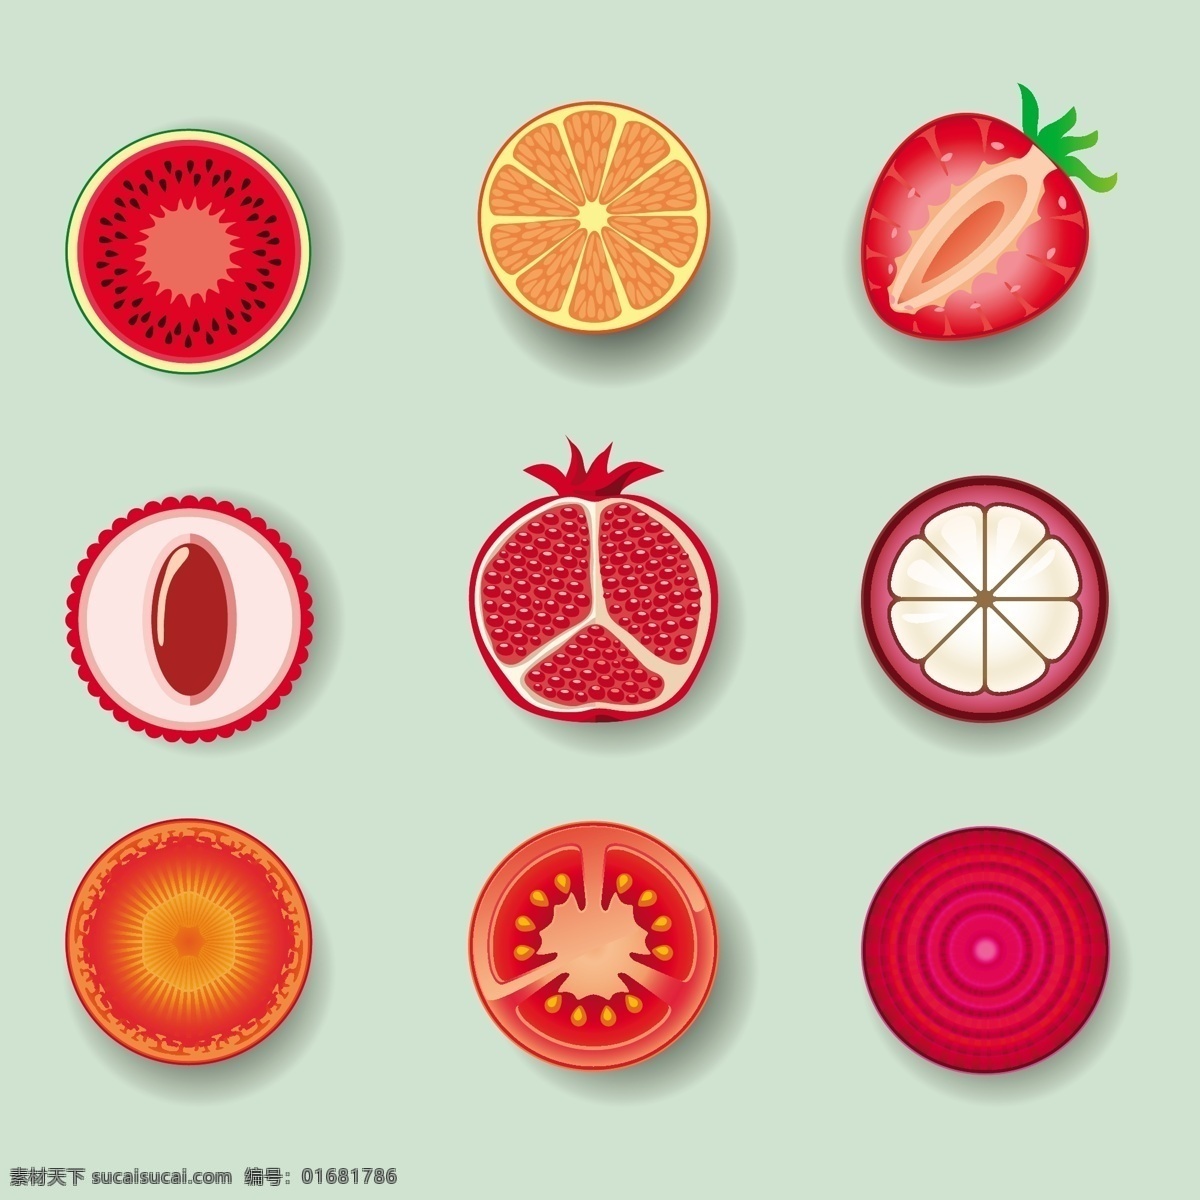 水果矢量素材 西瓜 橘子 草莓 西红柿 矢量素材 水果 石榴 洋葱